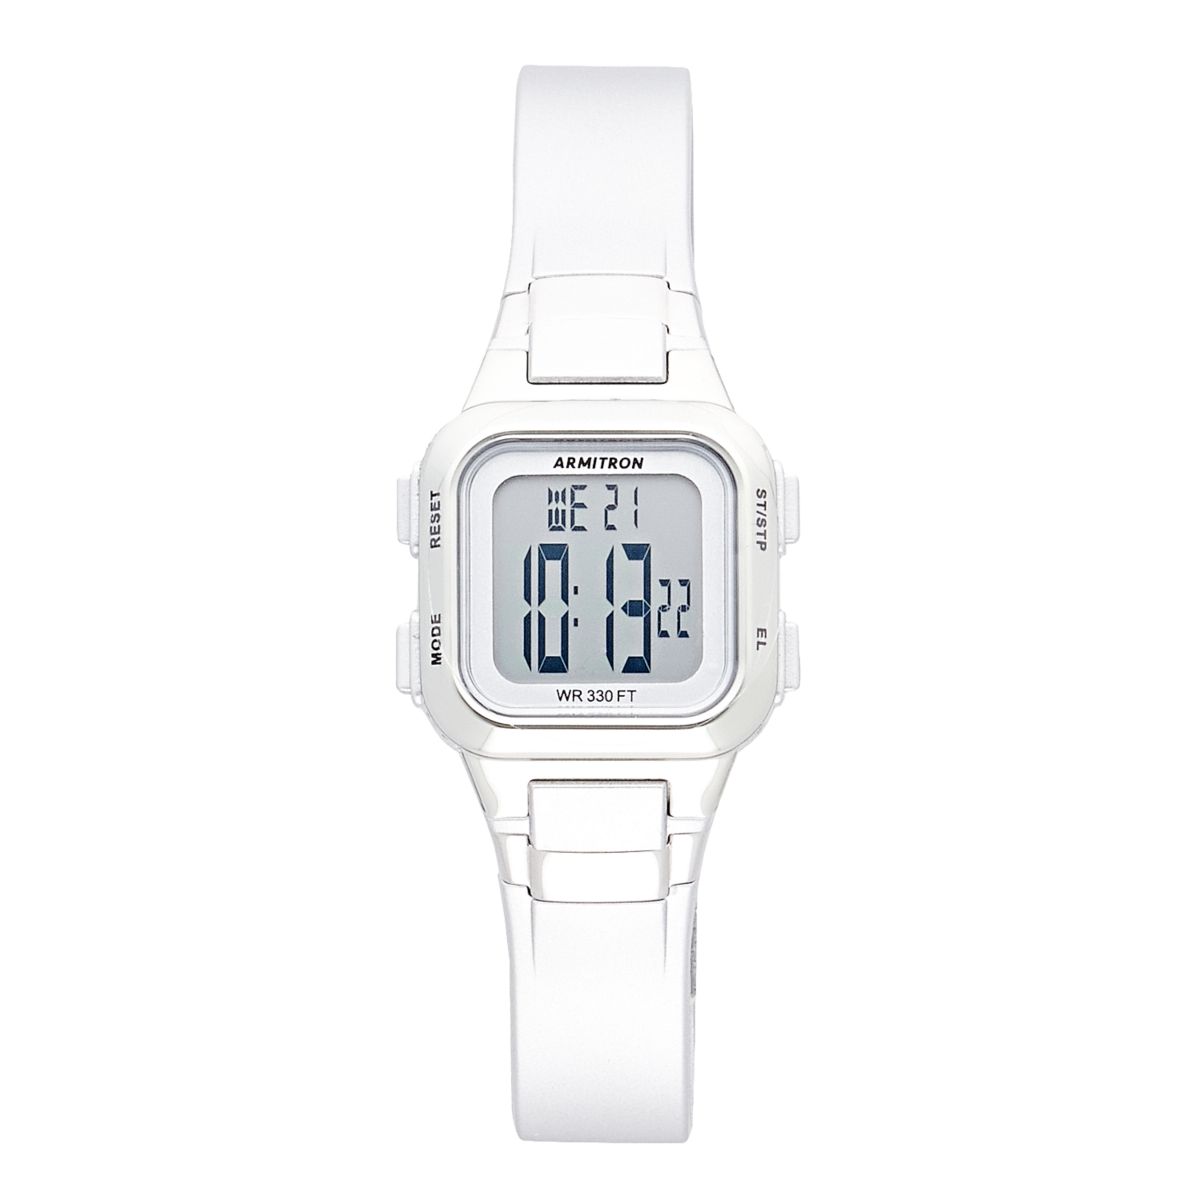 Спортивные часы Armitron Pro Sport EL LCD с хронографом — 45-7139SIL Armitron